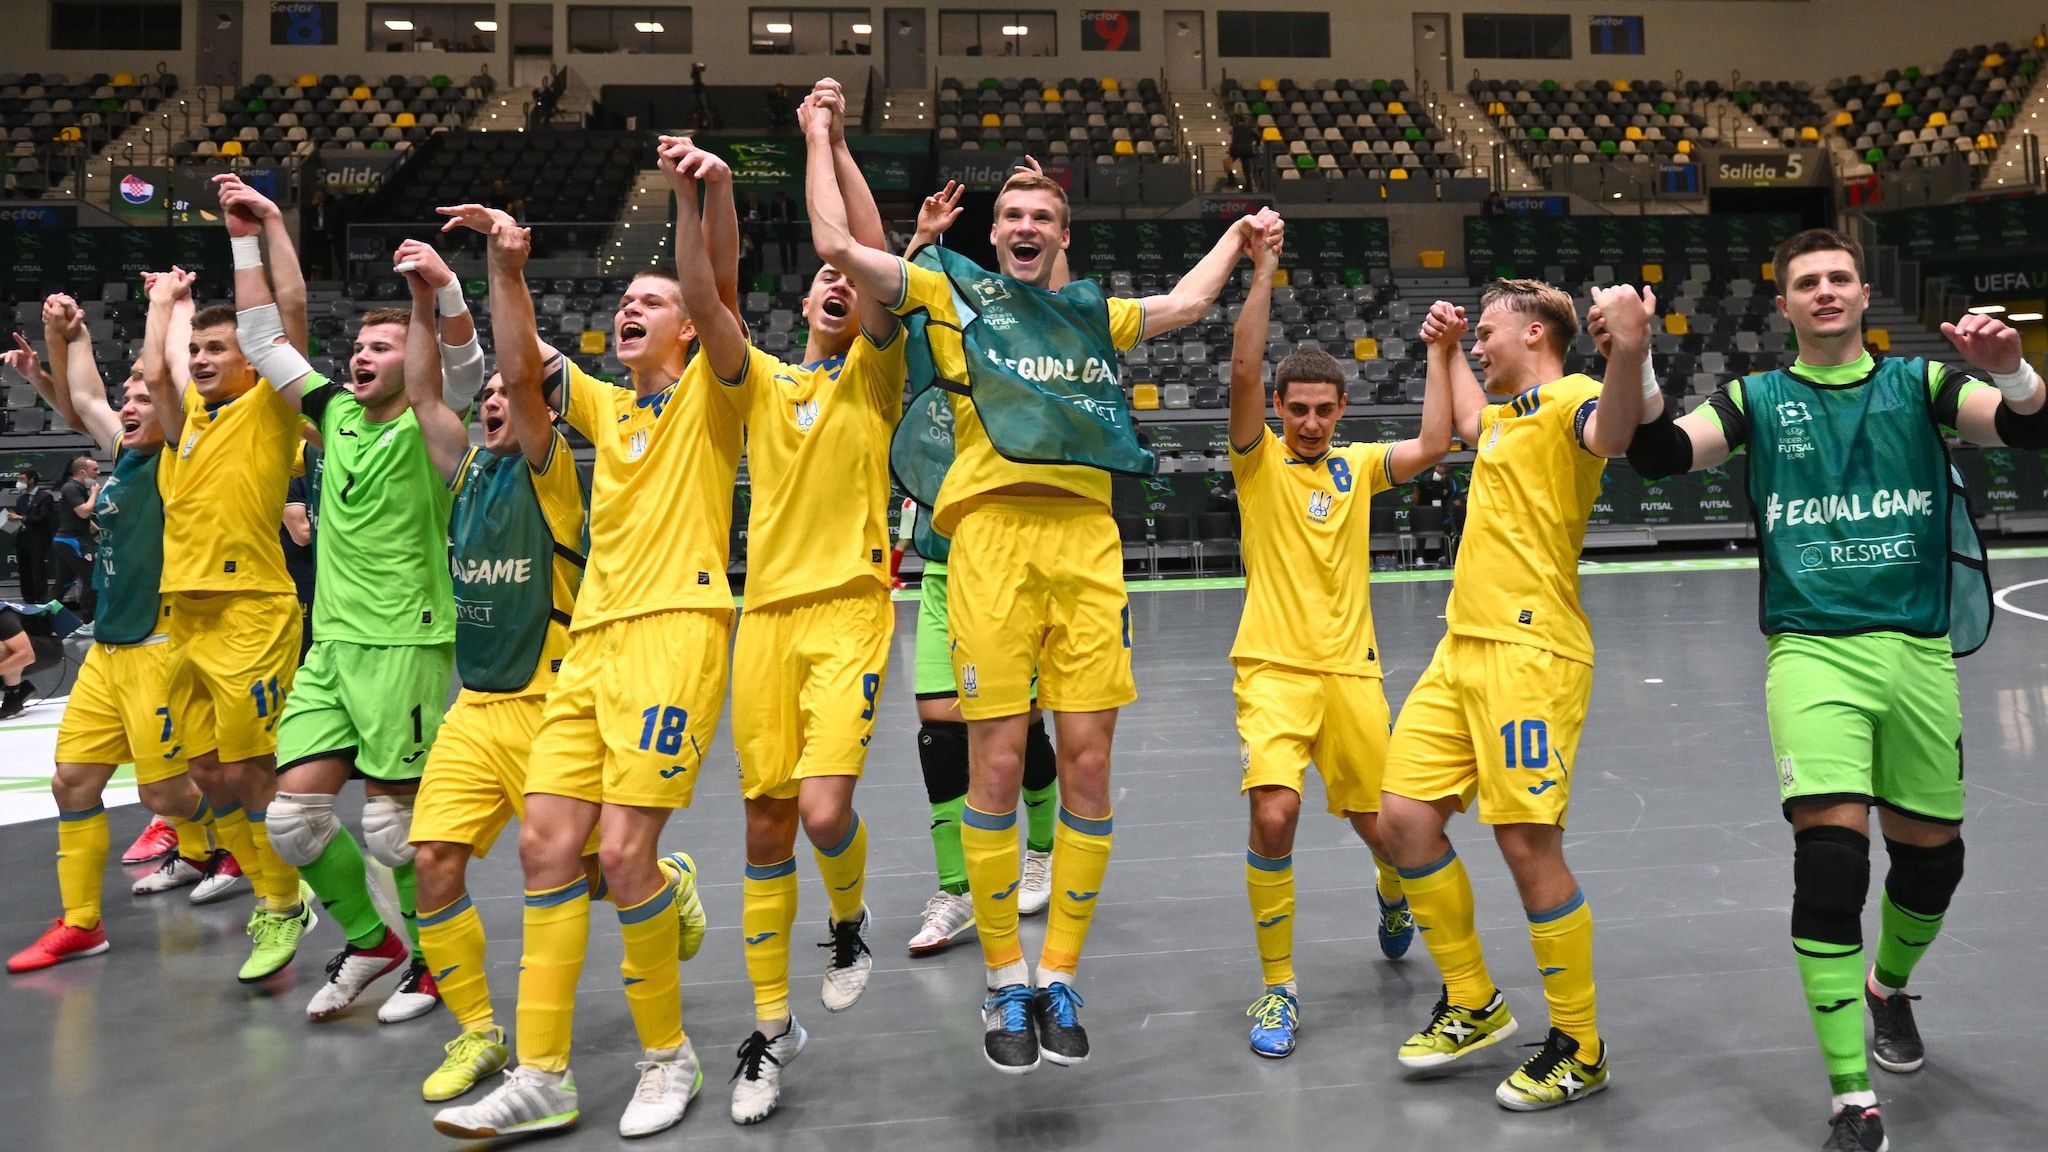 Campionati Europei UEFA Under 19 di calcio: Spagna, Ucraina, Portogallo e Italia vincono le prime partite |  Campionato Europeo Futsal U19